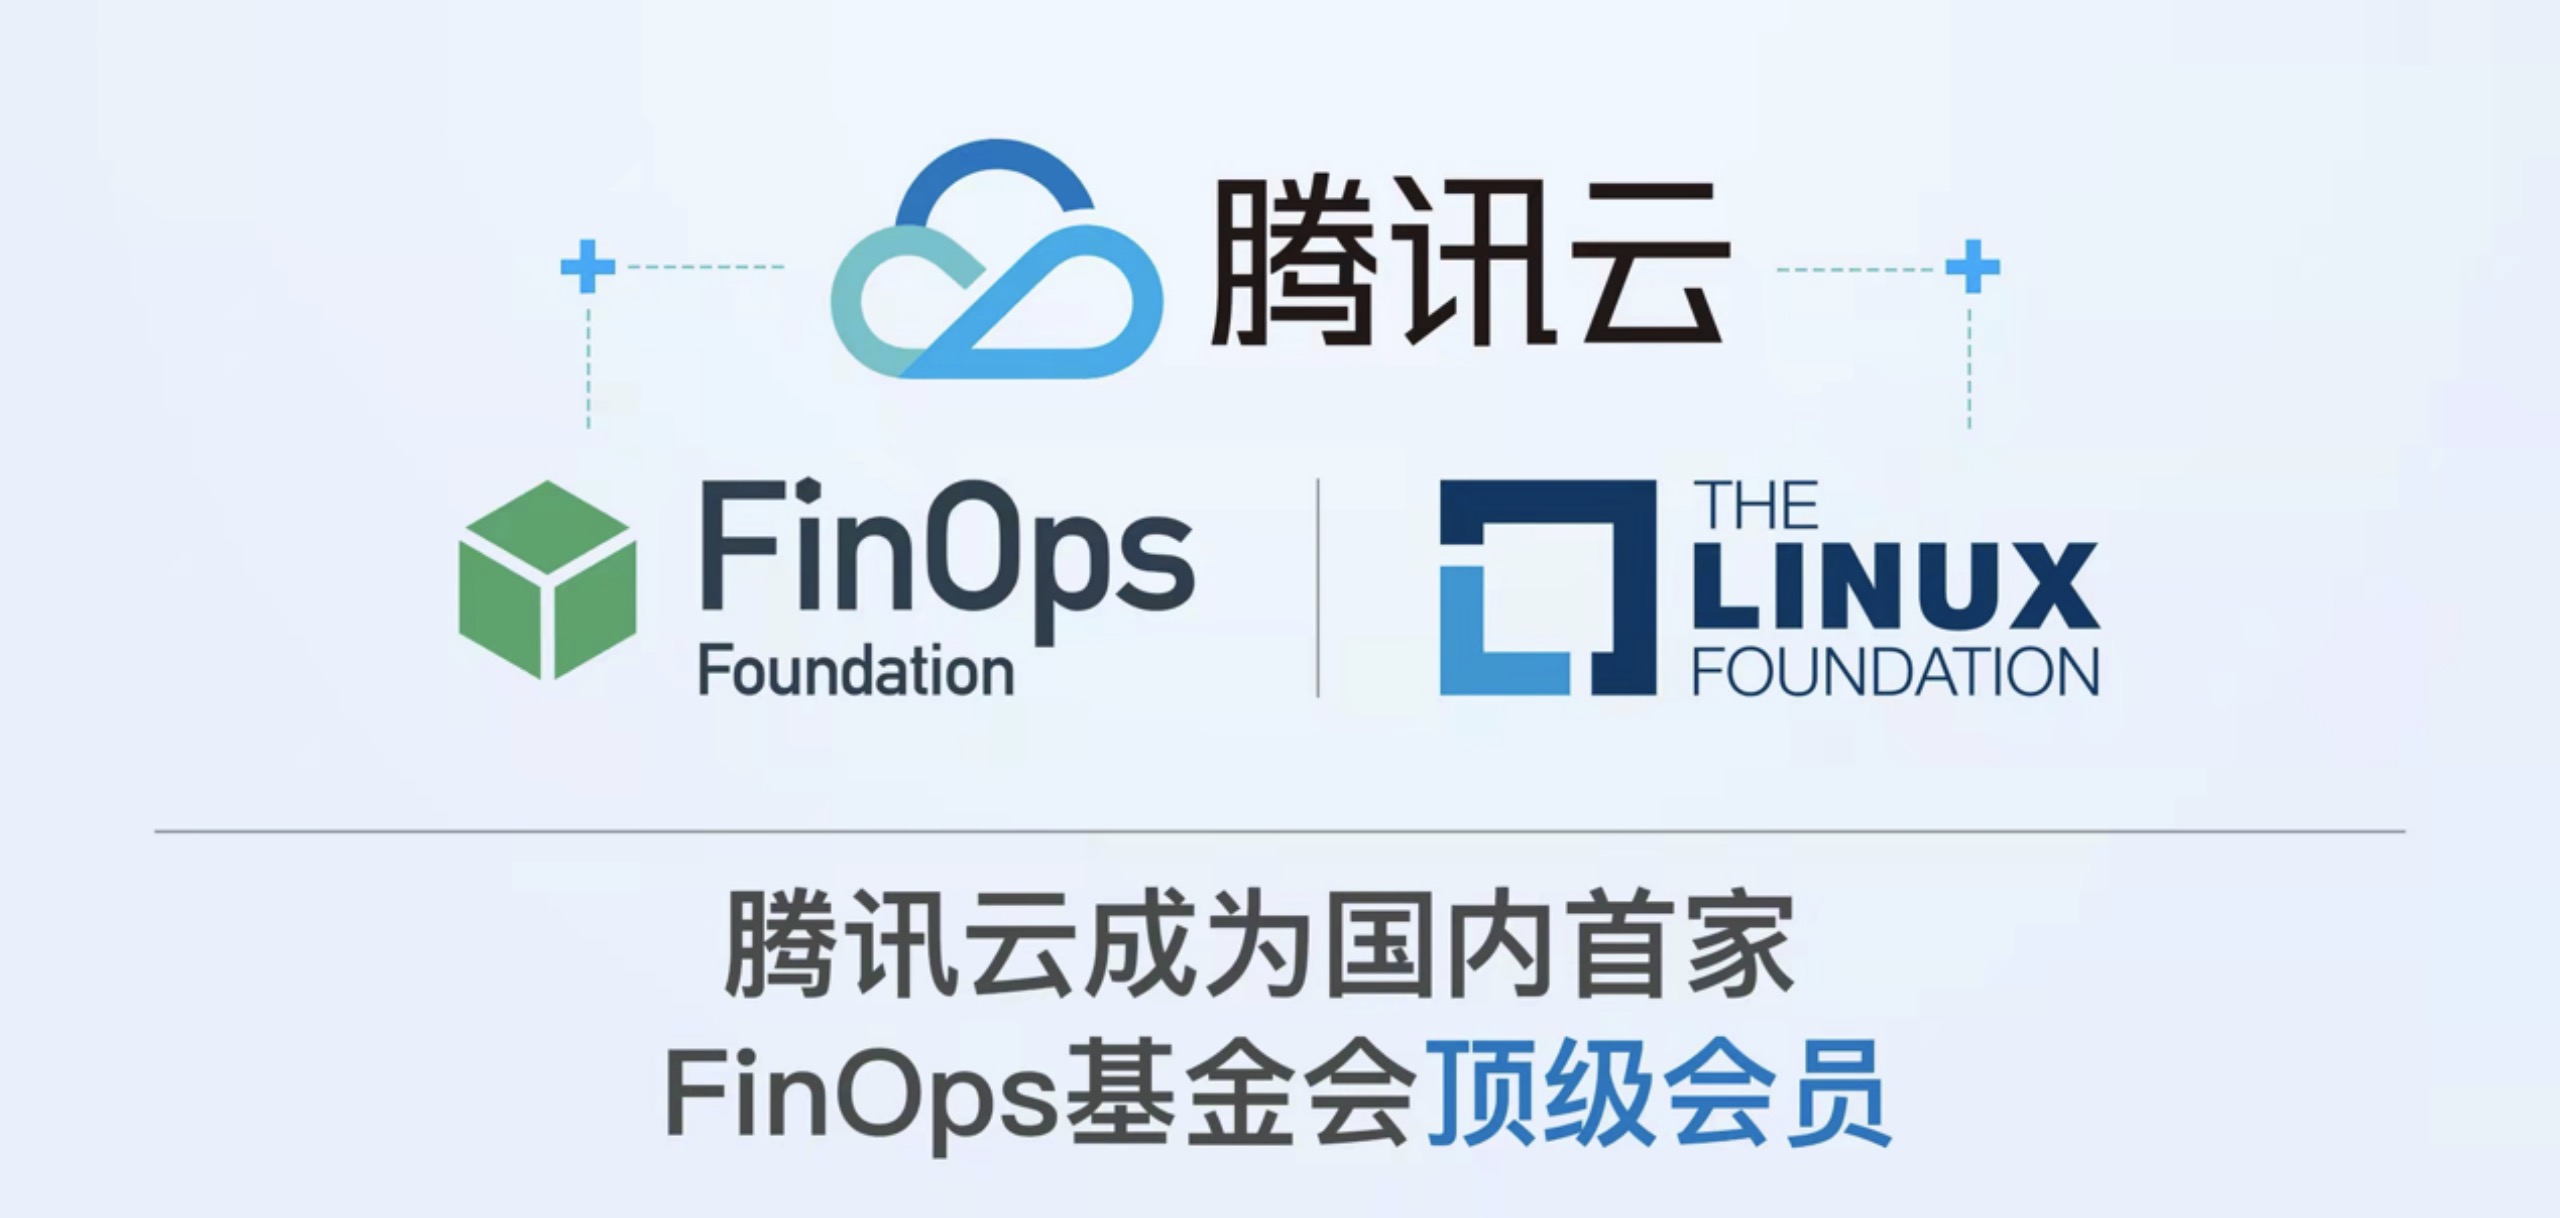 腾讯云宣布成为国内首家FinOps基金会顶级会员